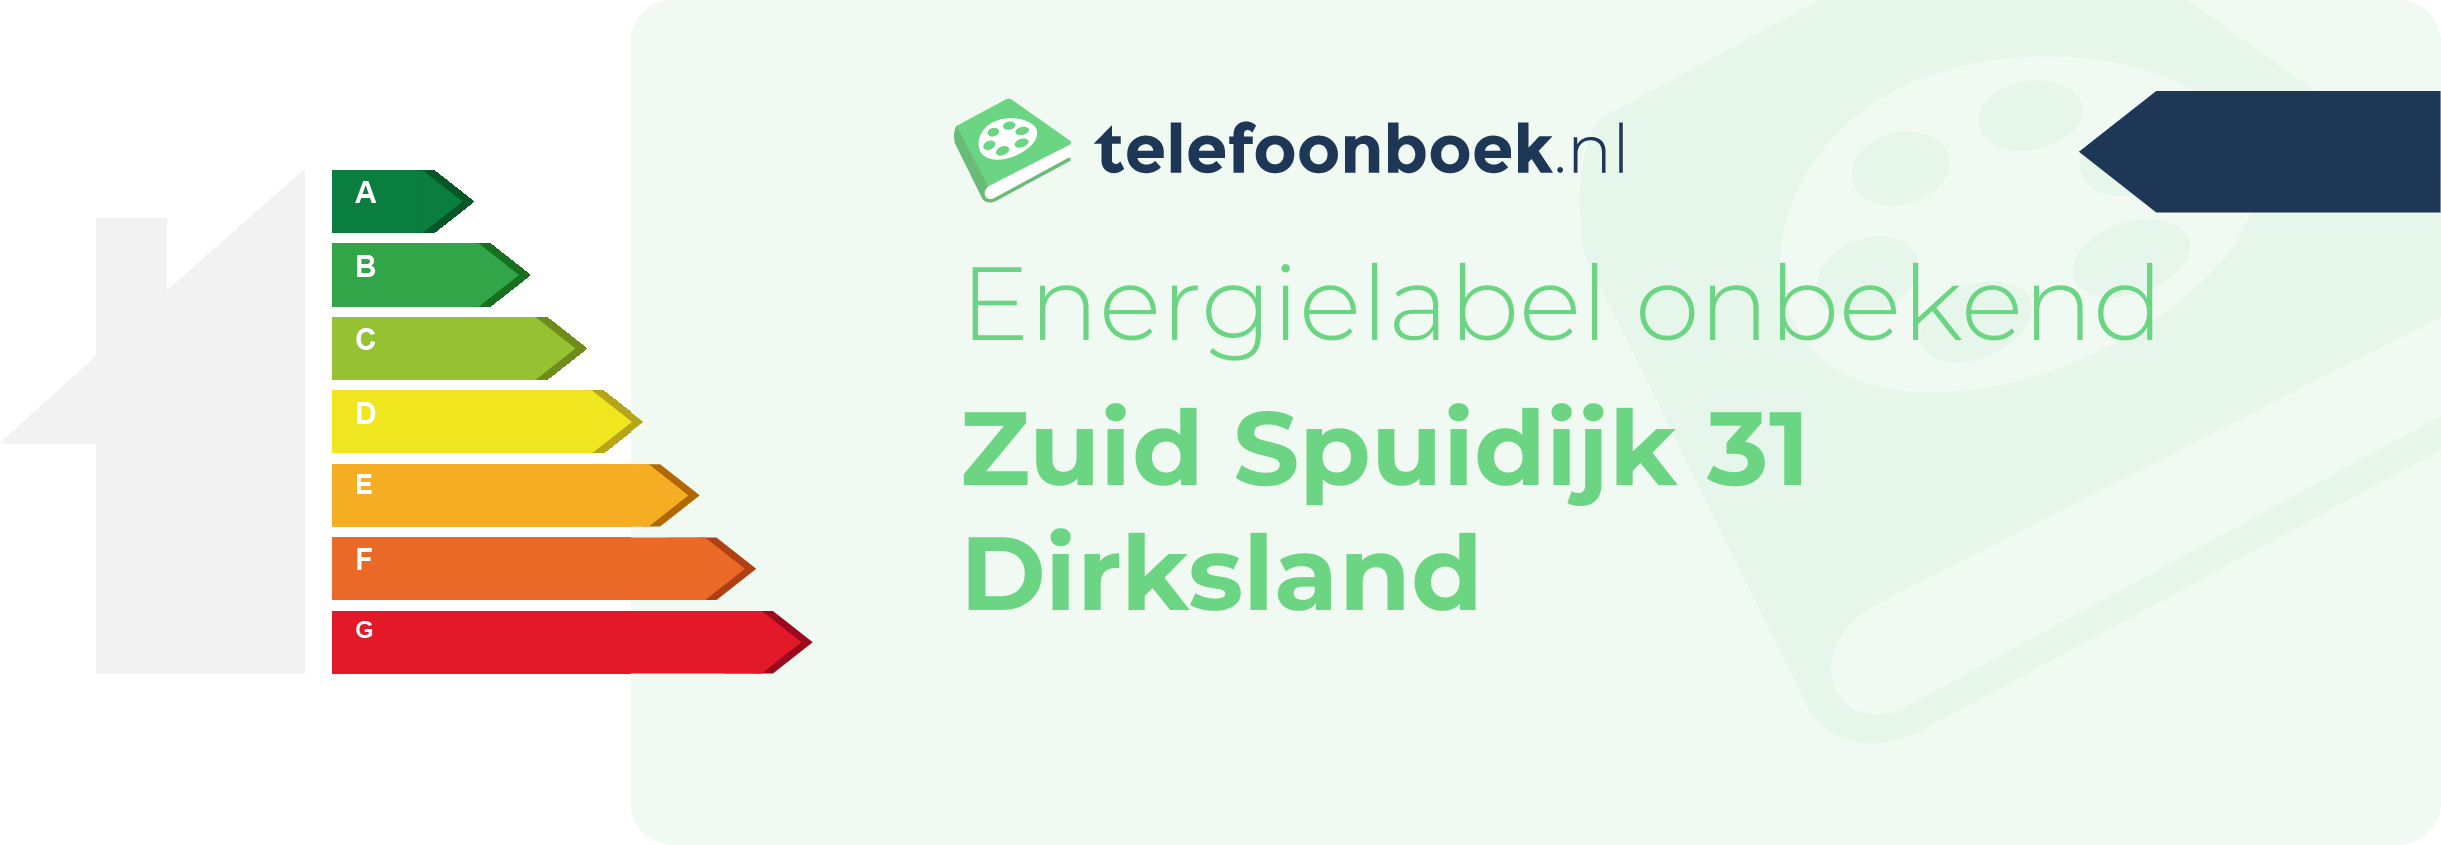 Energielabel Zuid Spuidijk 31 Dirksland